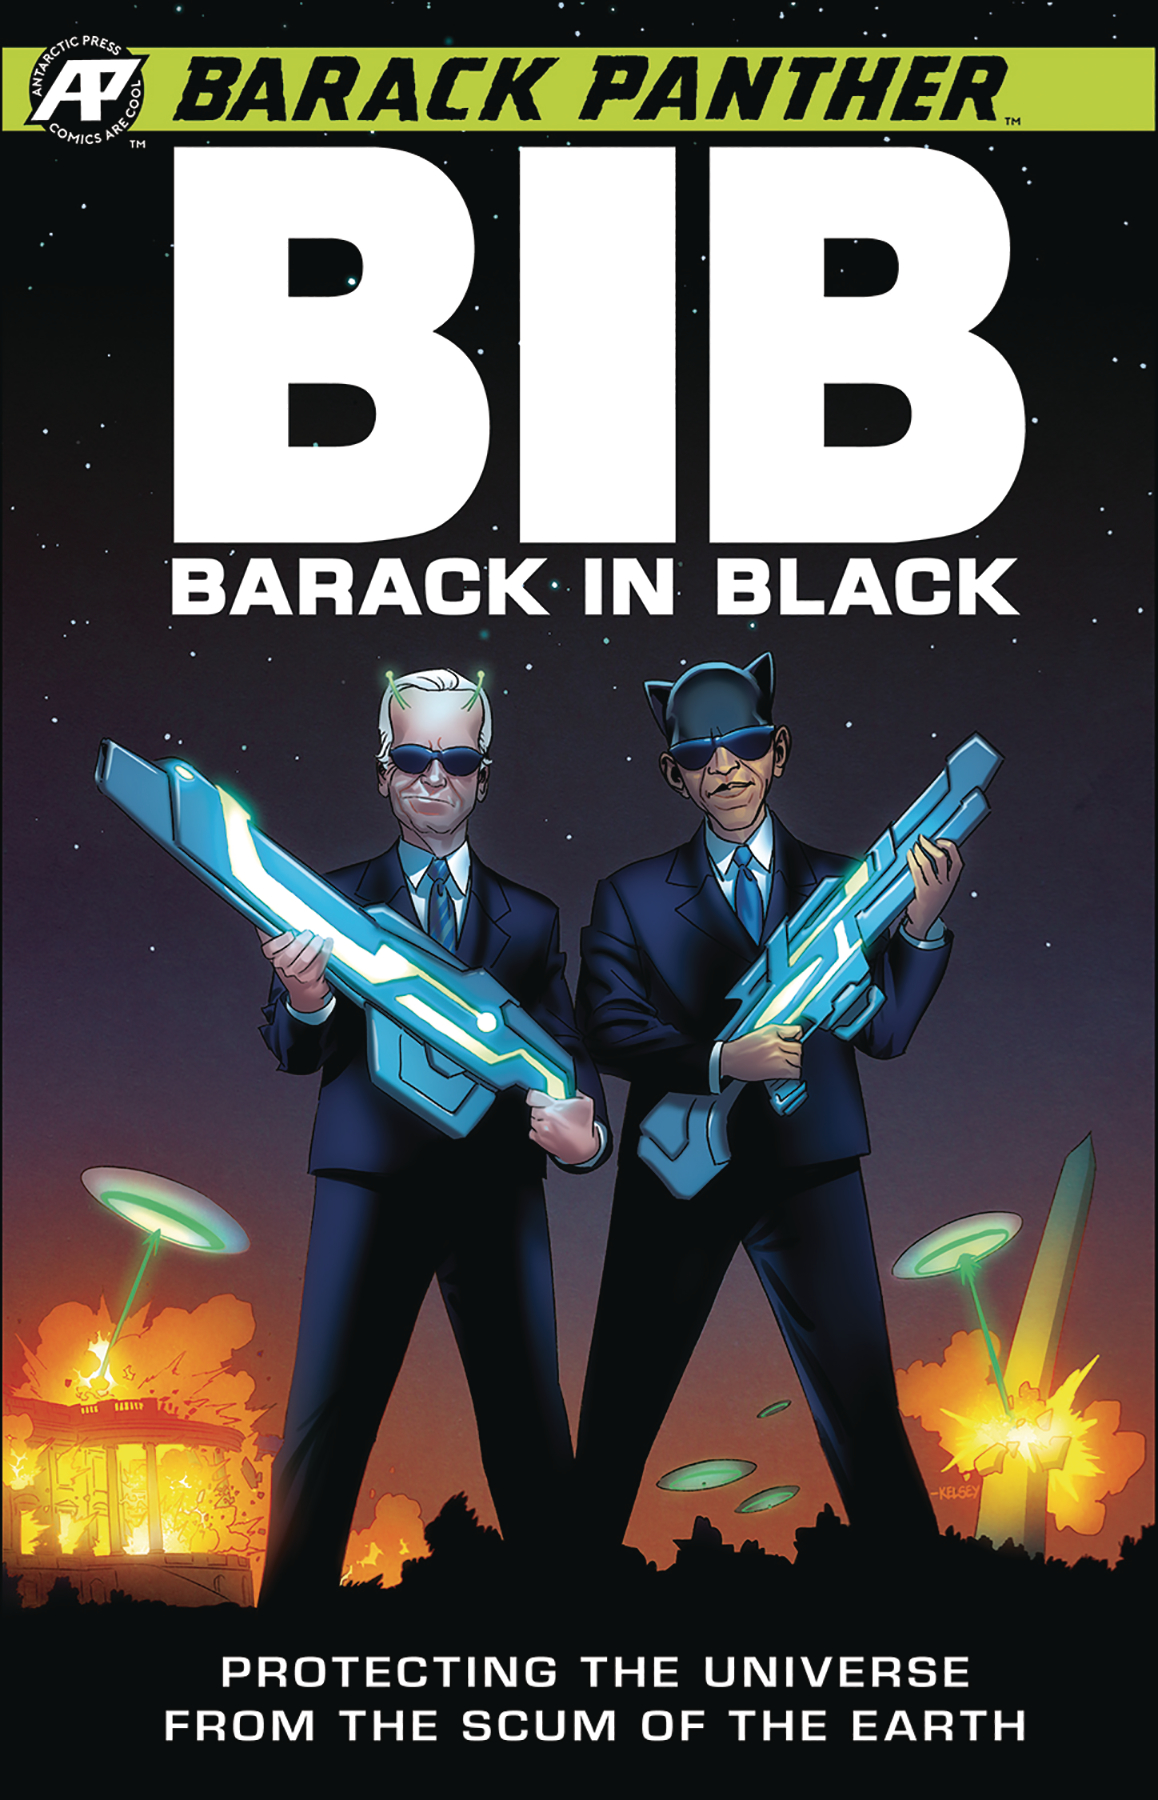 Barack Panther: Barack in Black no. 1 (2019 Series)